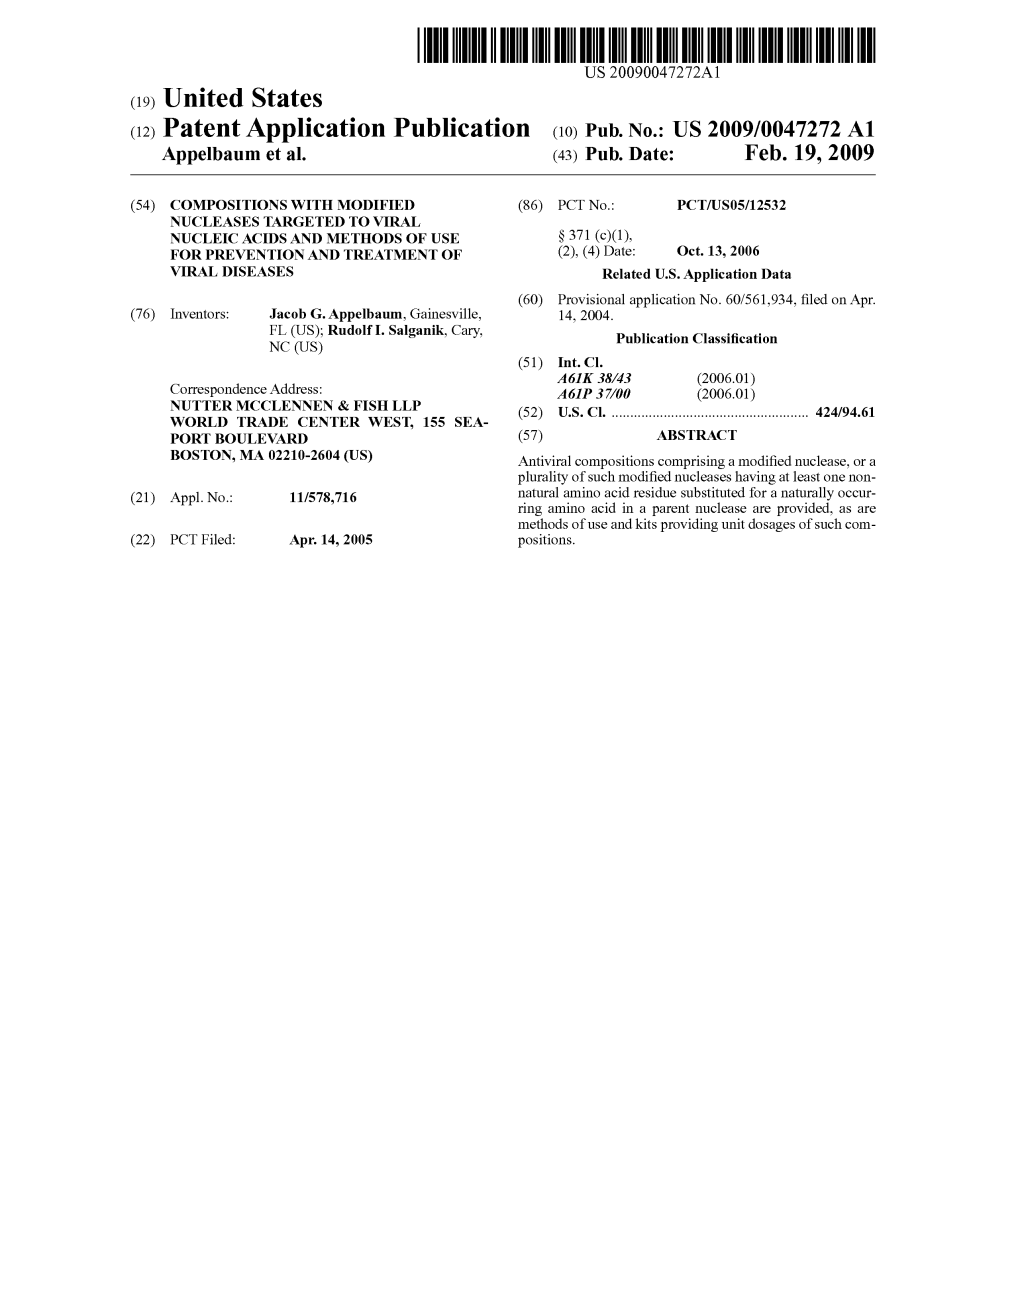 (12) Patent Application Publication (10) Pub. No.: US 2009/0047272 A1 Appelbaum Et Al